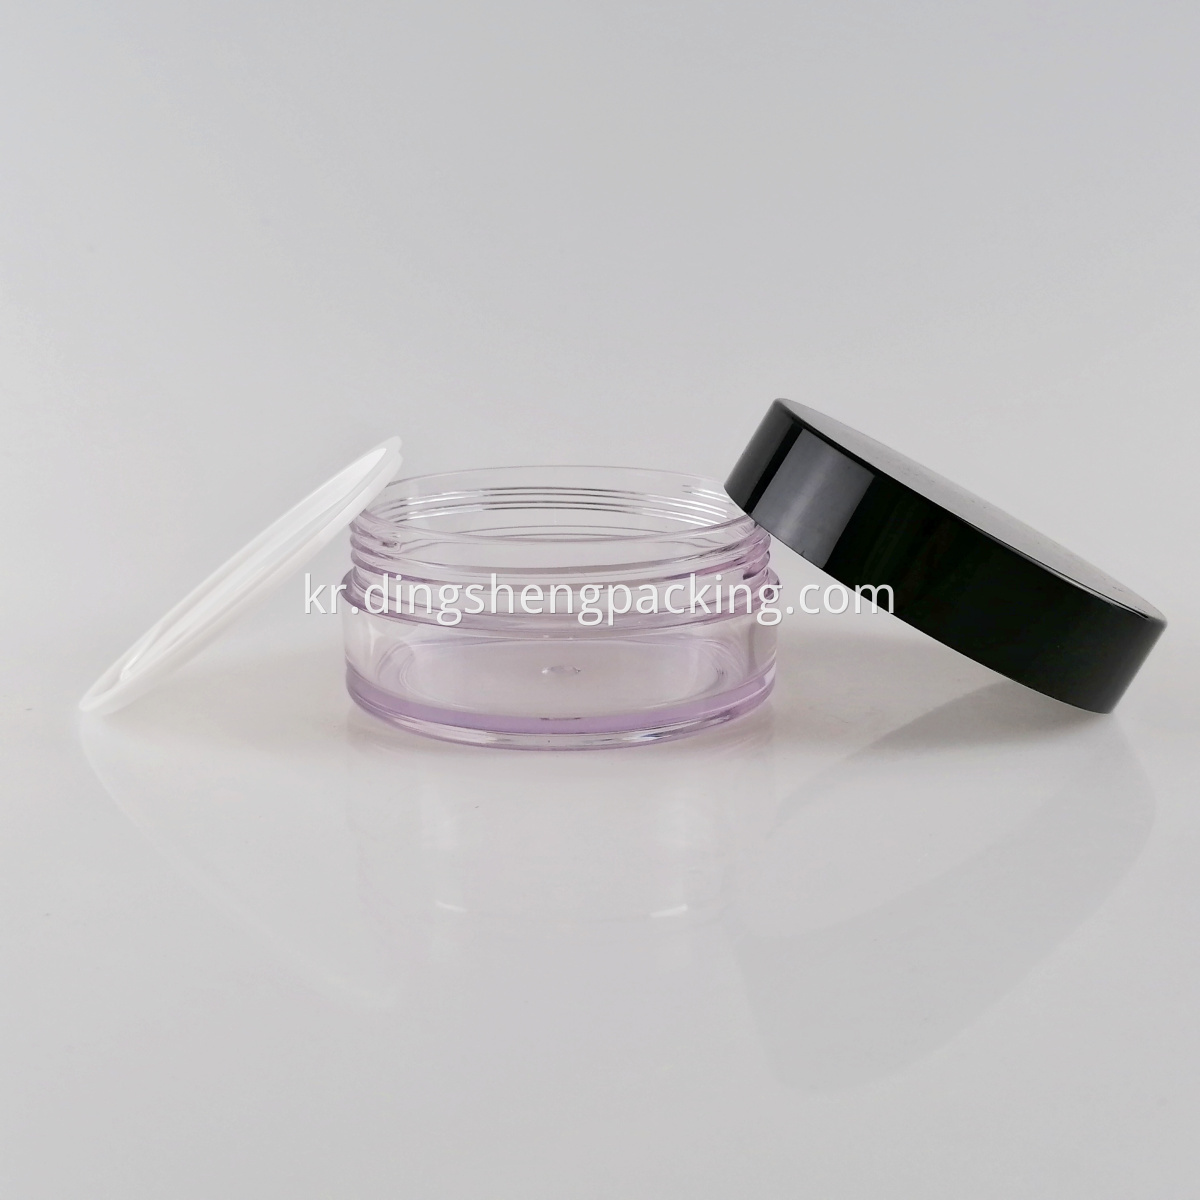 Wholesale Clear Round Plastic PETG Jar